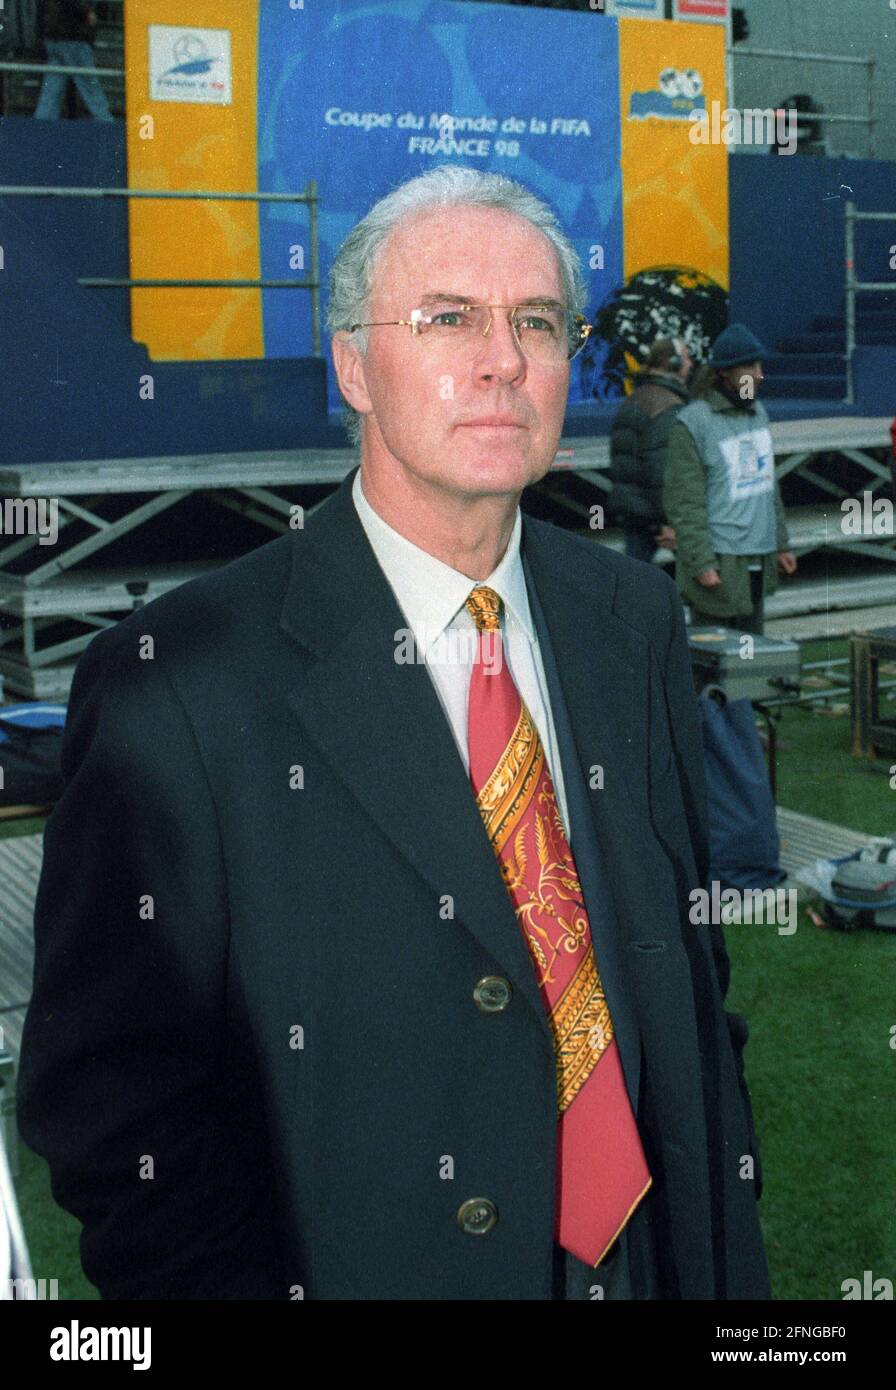 Tirage au sort pour la coupe du monde 1998 à Marseille 04.12.1998. Franz Beckenbauer. [traduction automatique] Banque D'Images